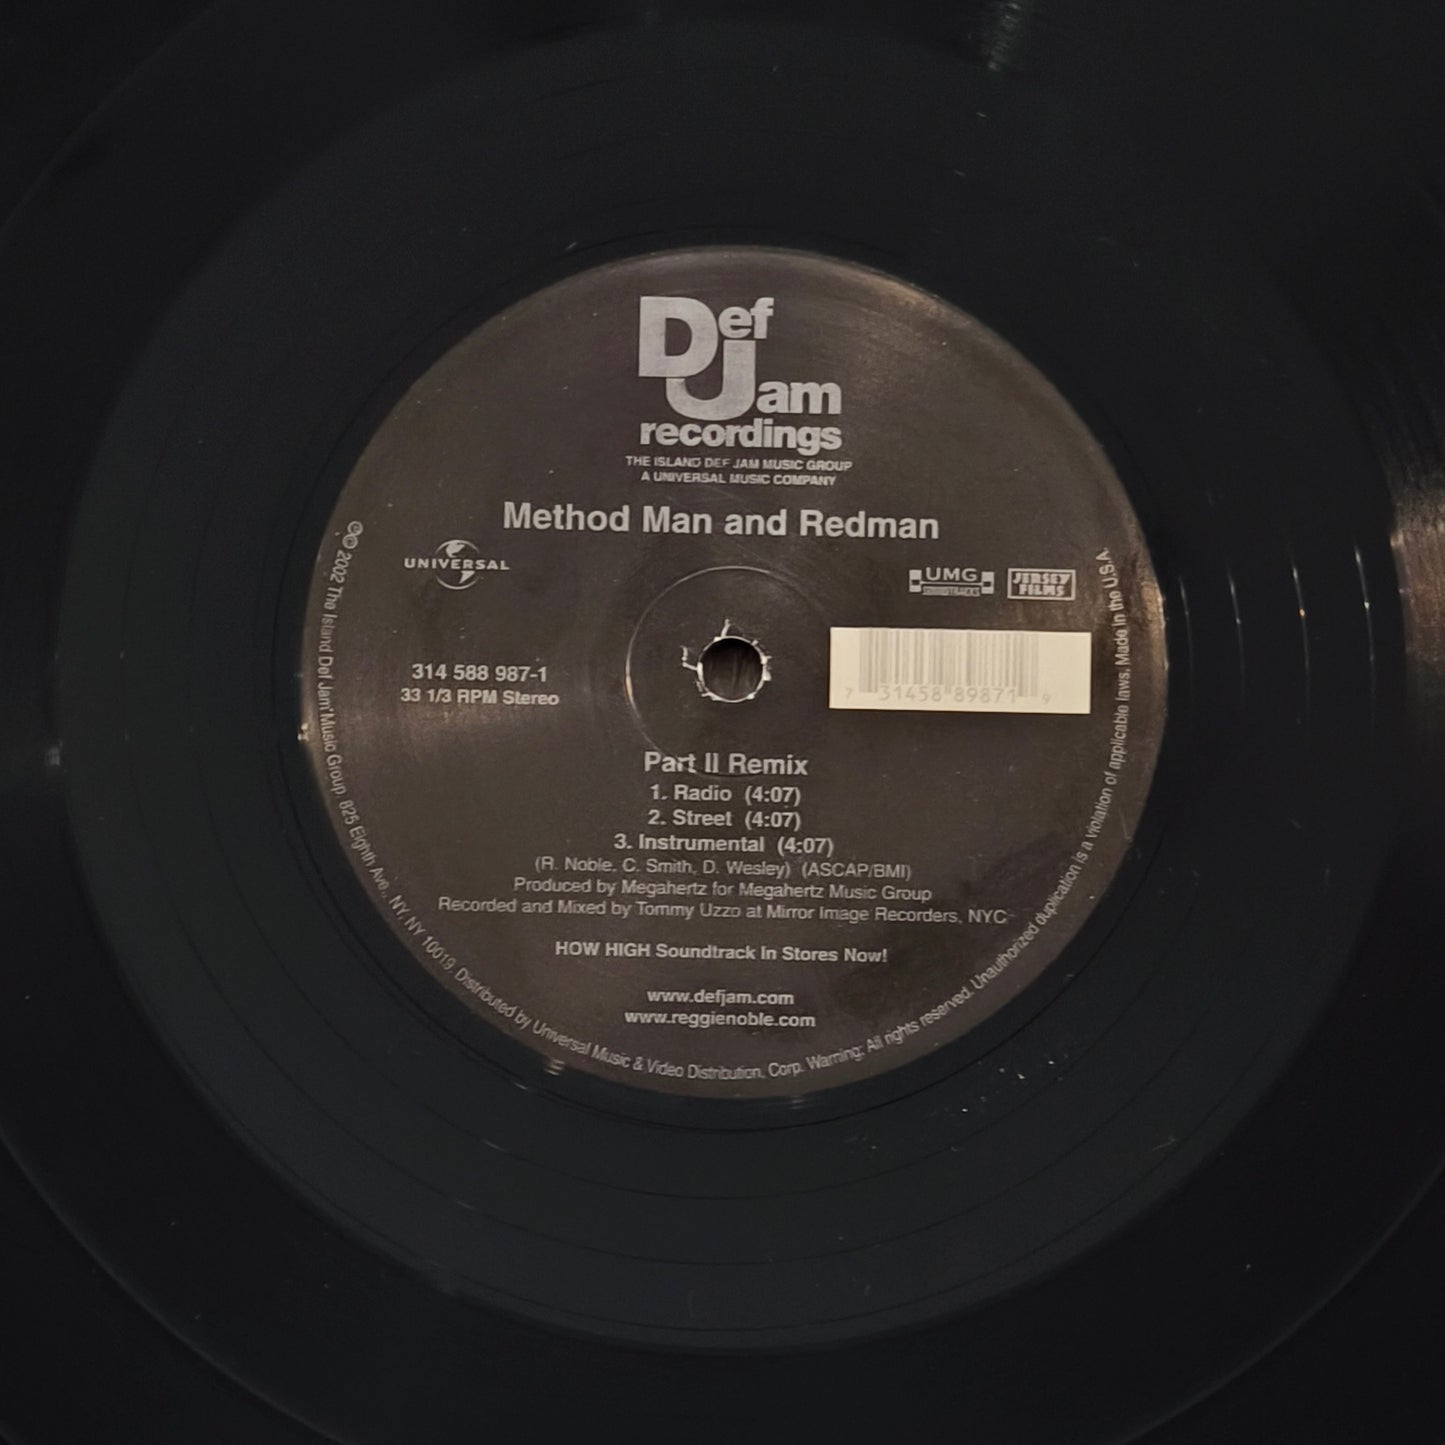 METHOD MAN & REDMAN - Part II Remix / Let's Do It